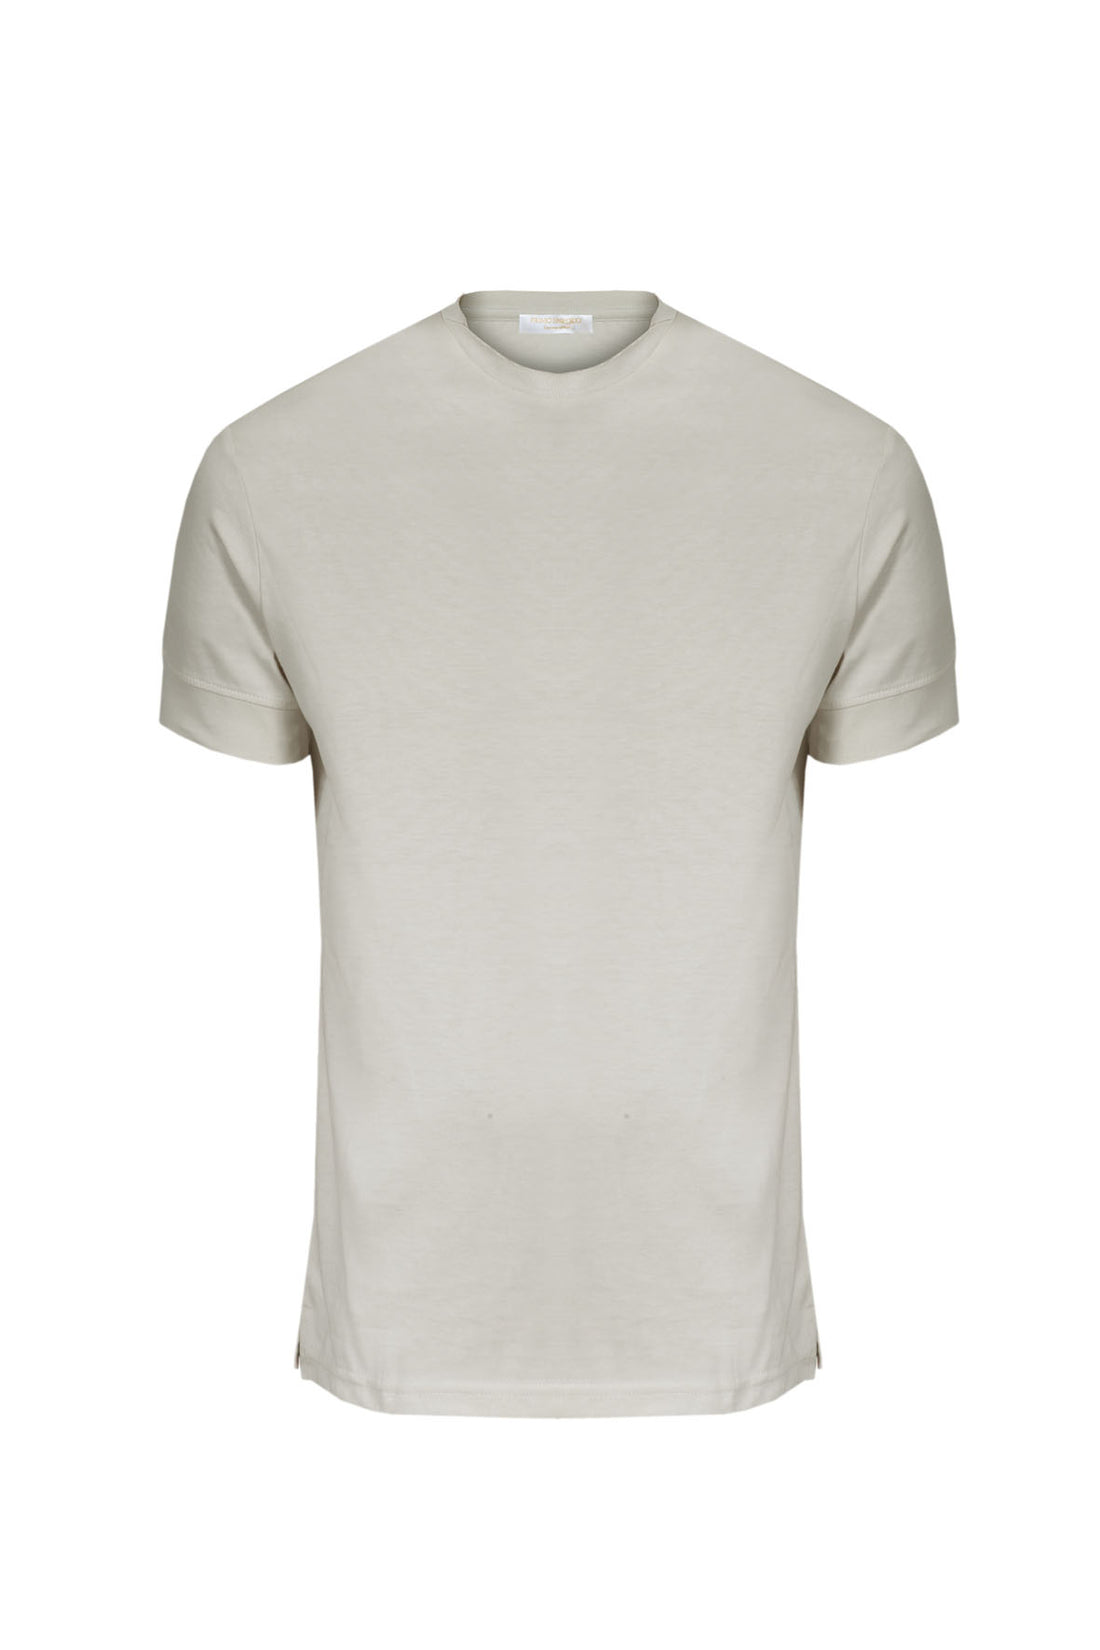 Half Sleeve Round Neck T-Shirt Raw Cut - Beige